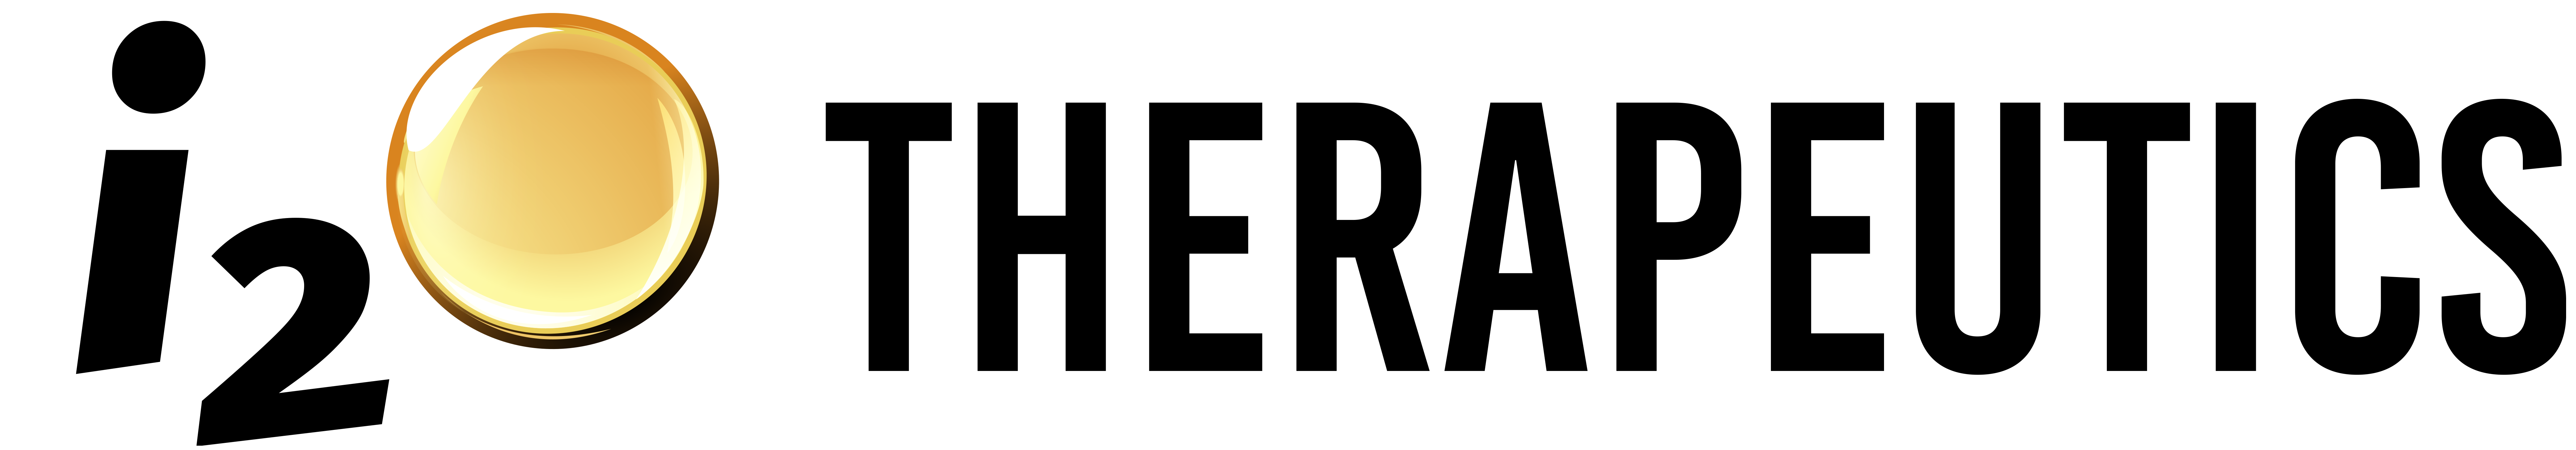 I2o logo